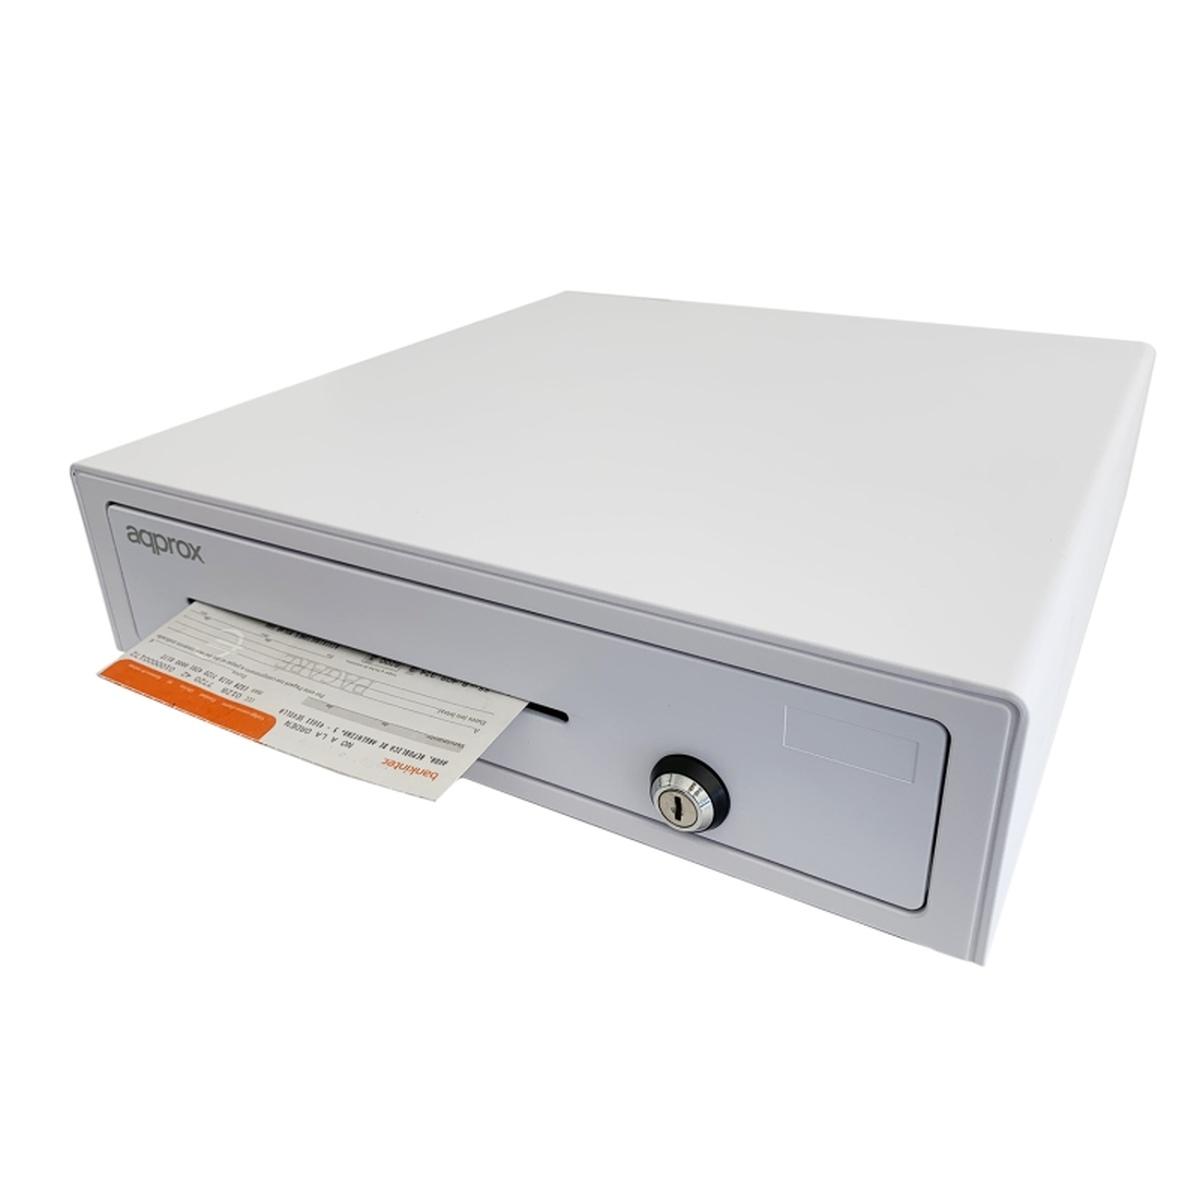 Cassetto Porta Denaro Elettrico Approx - 12 Scomparti - Apertura Manuale e Automatica - Connessione RJ11